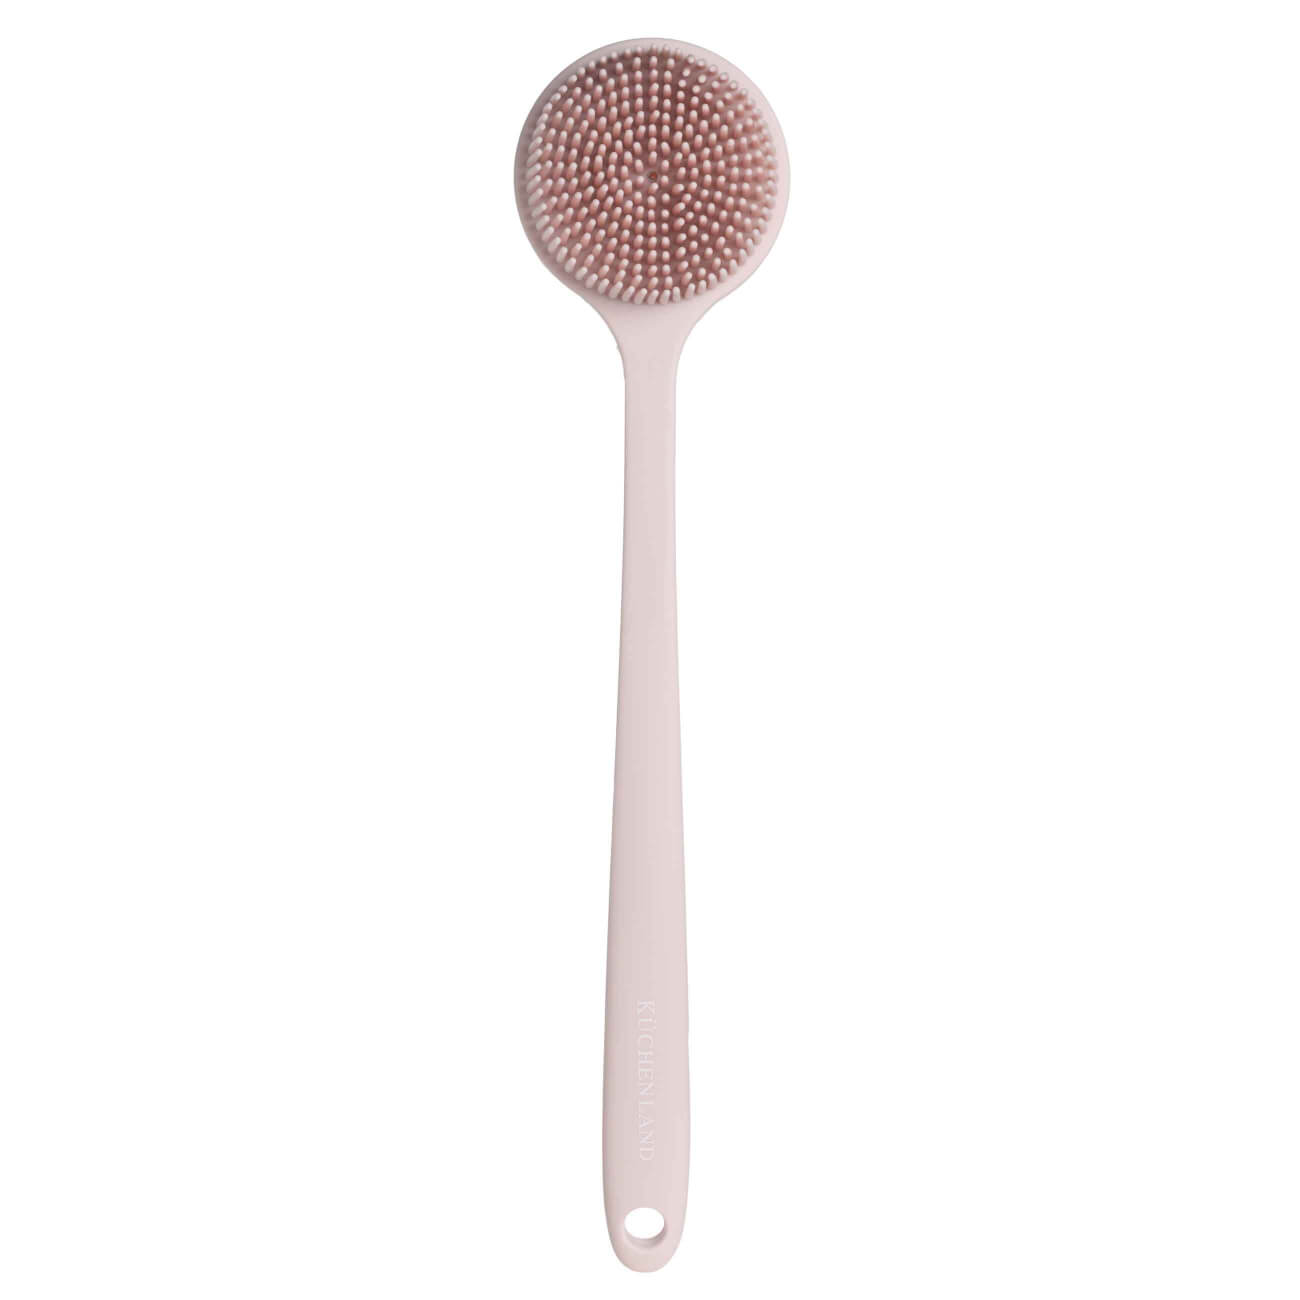 Щетка для мытья тела, 38 см, с ручкой, силикон, пудровая, Glamor щетка для мытья посуды mr brush